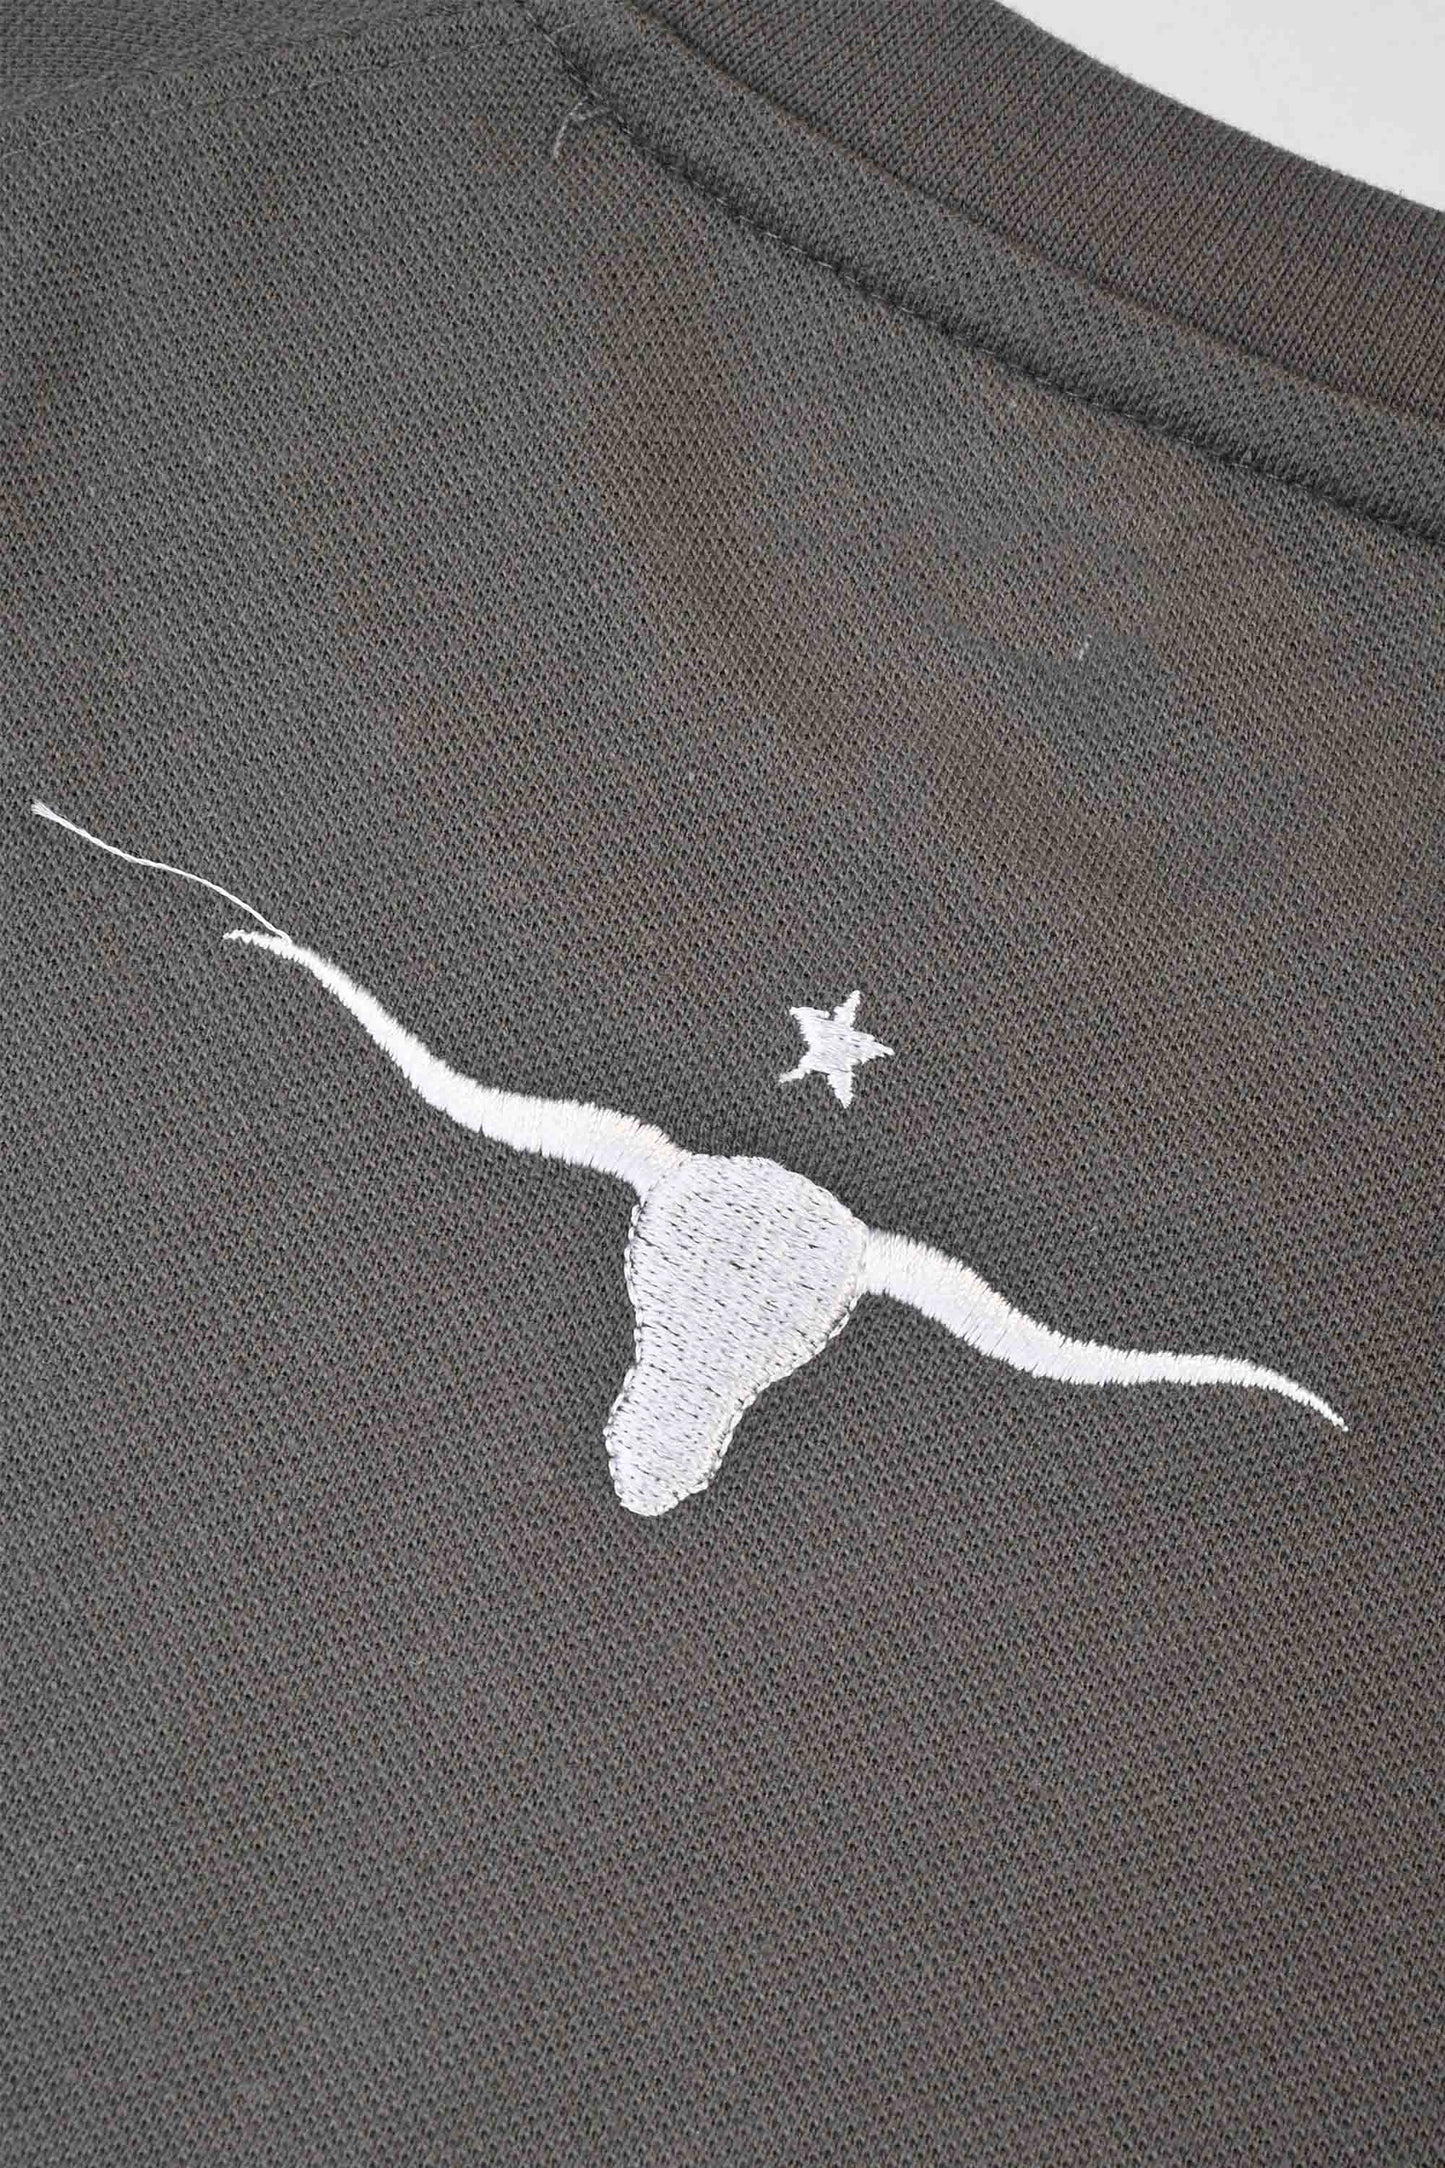 Polo Republica Men's Texas Embroidered Raglan Sleeve Pique Tee Shirt